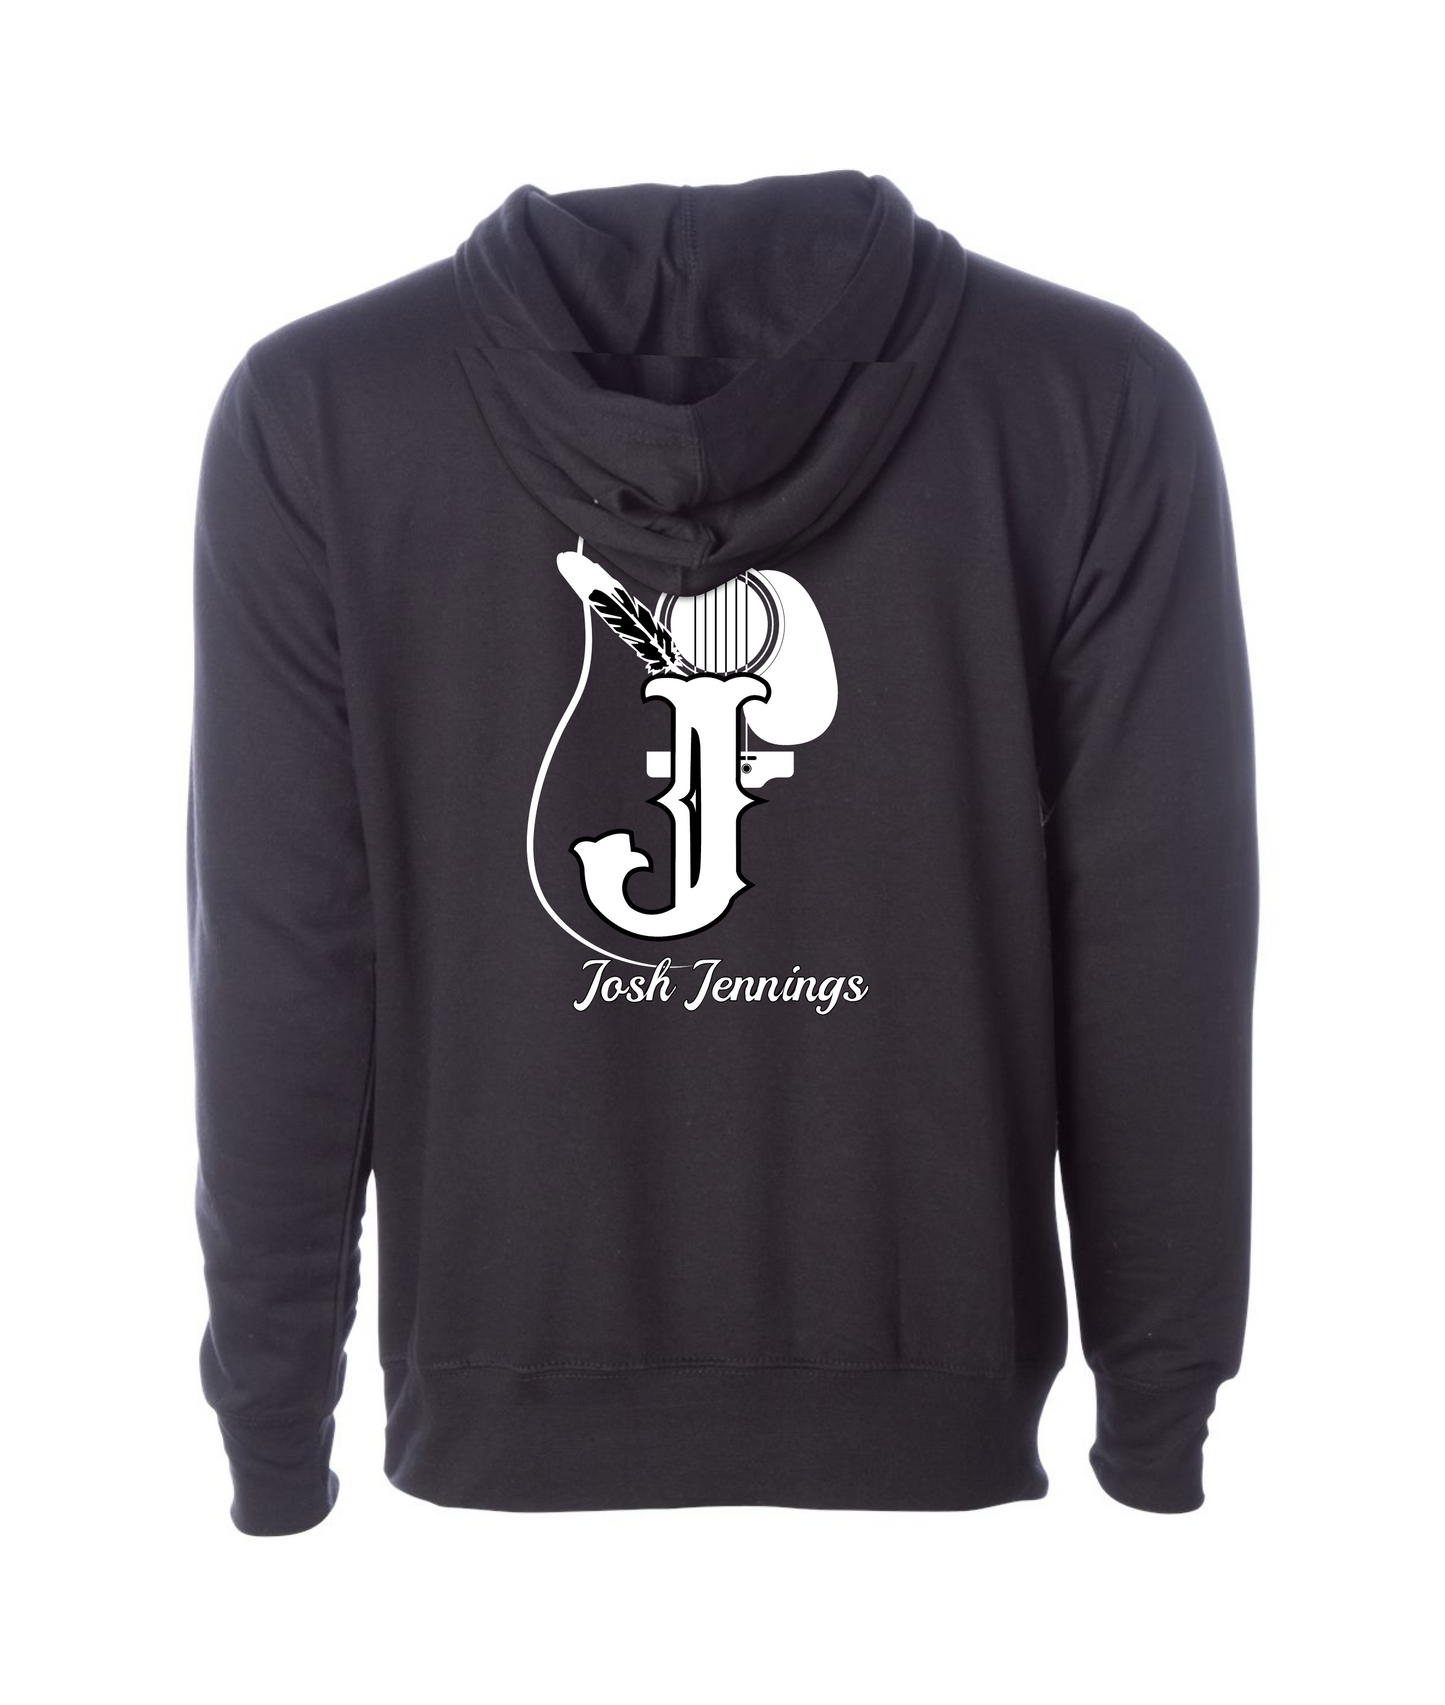 Josh Jennings - Logo - Black Hoodie